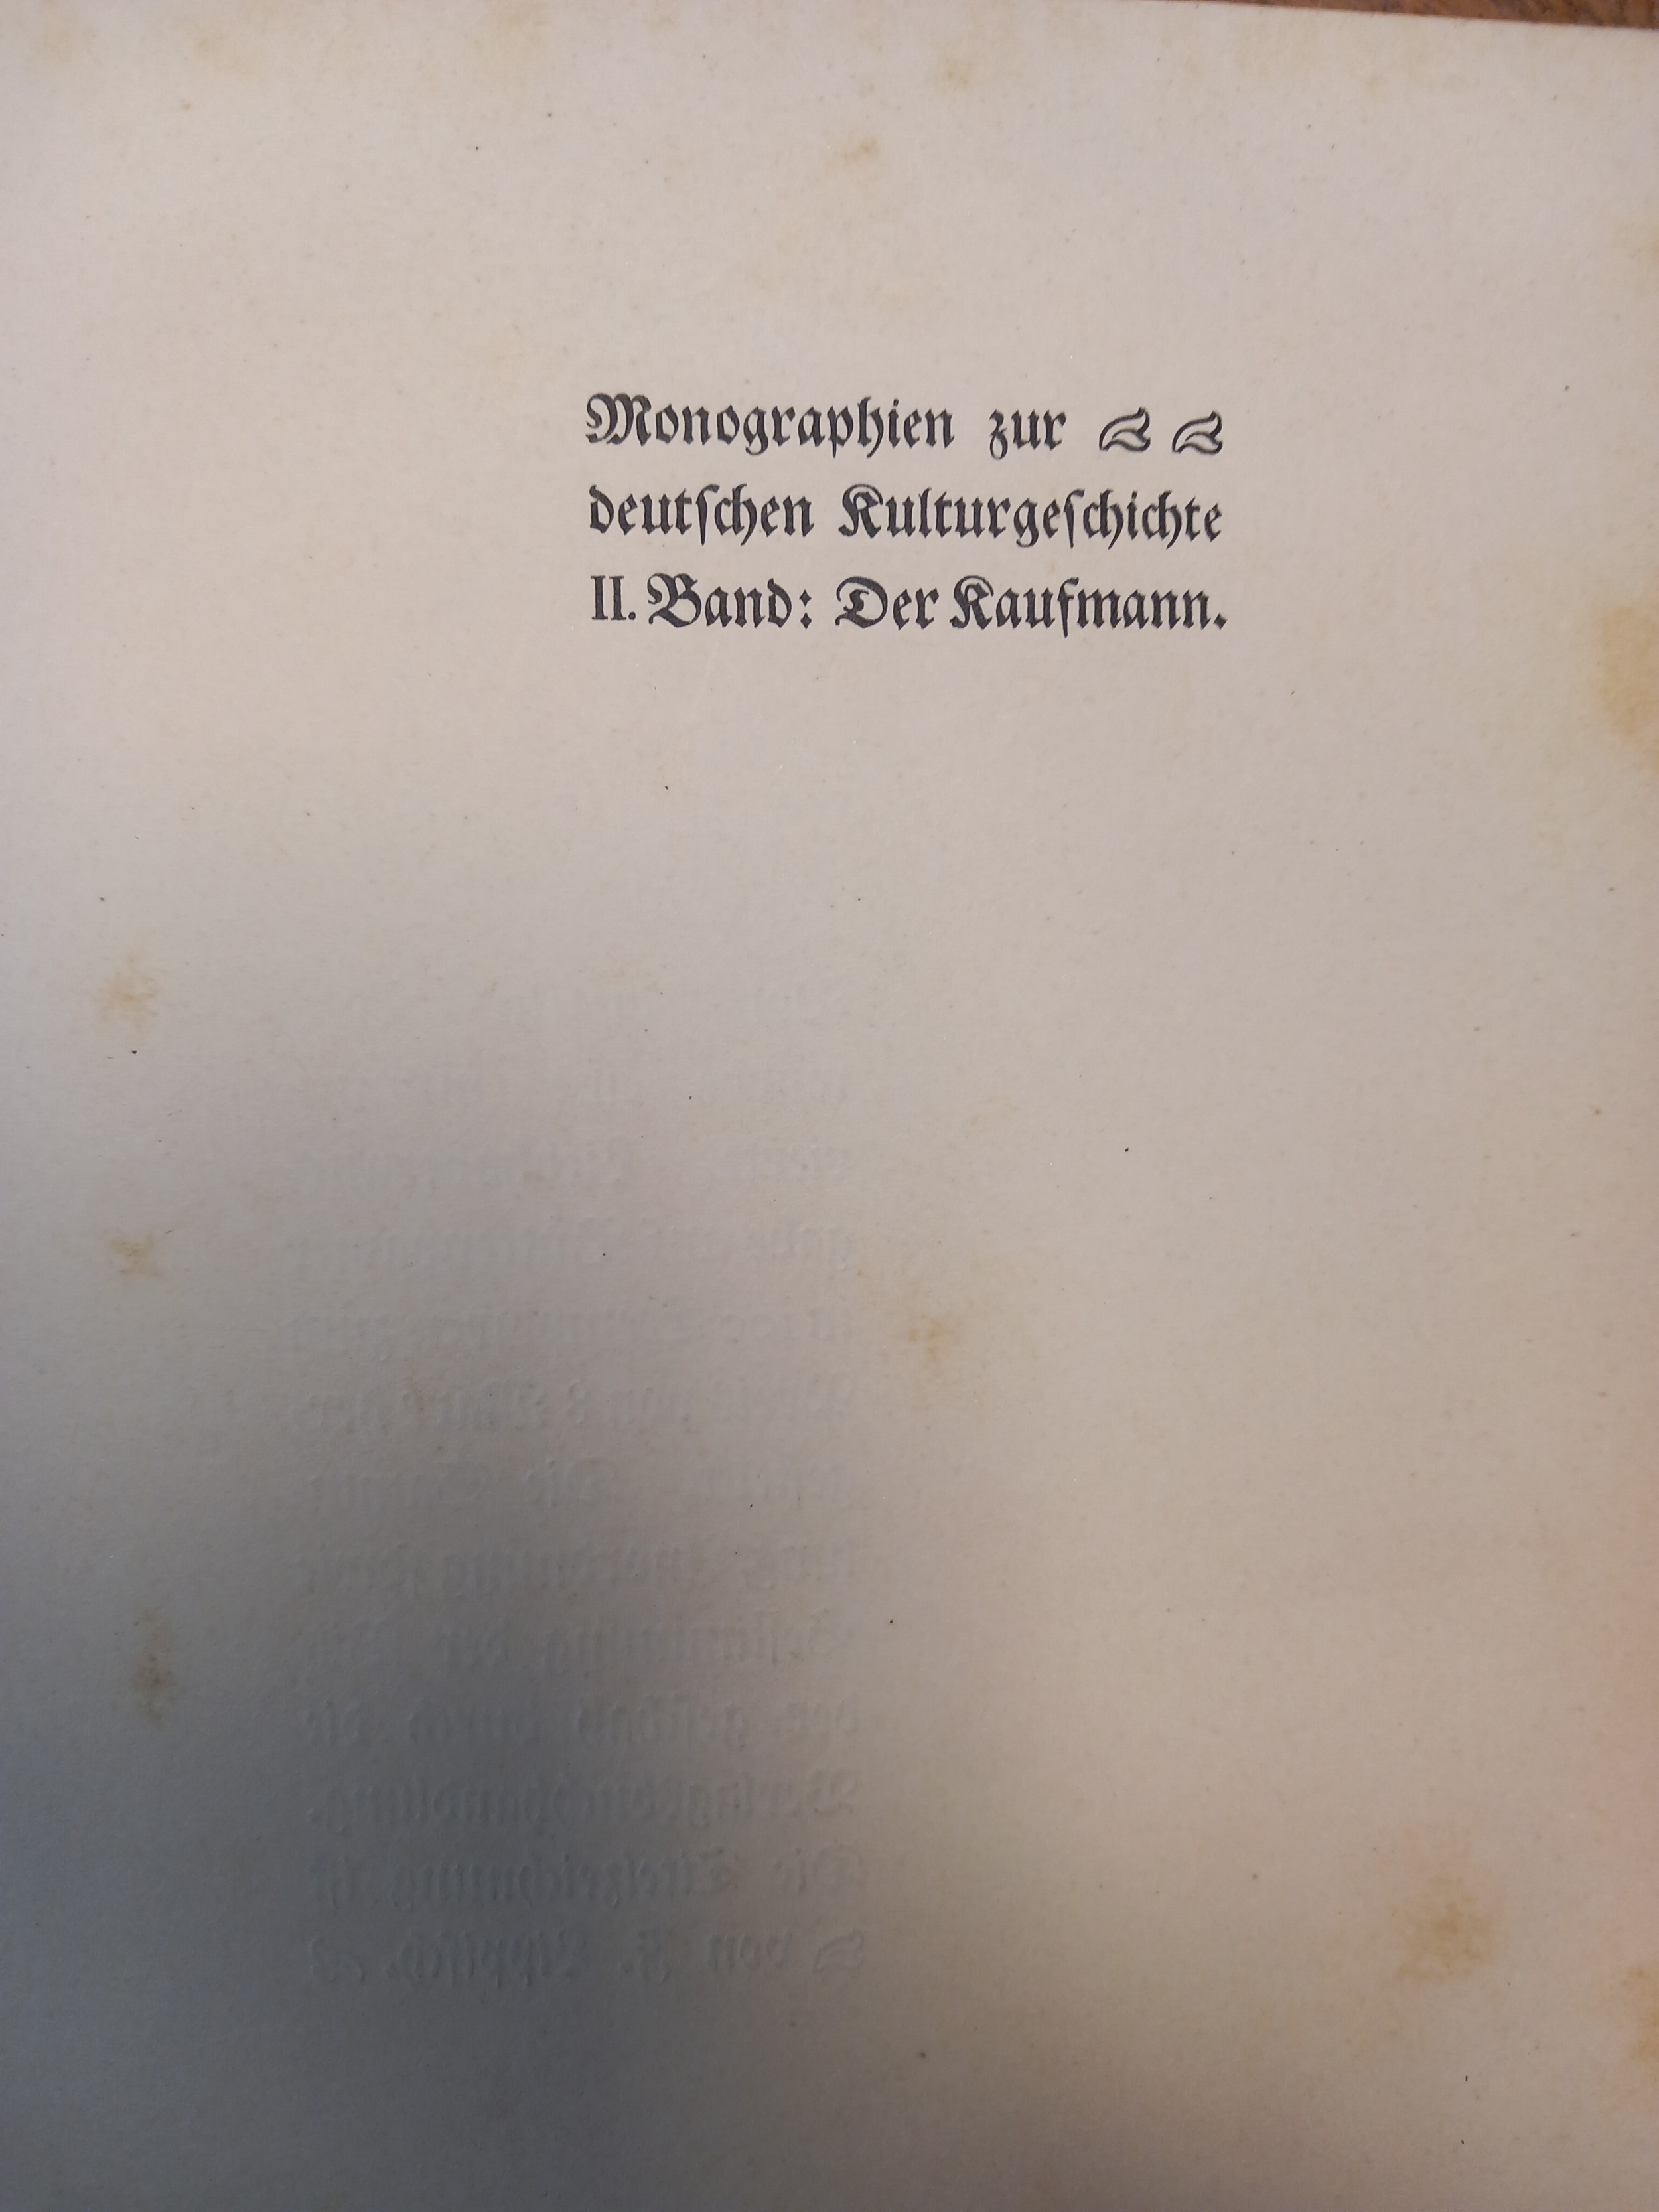 Hack, Maria. Winter evenings or tales of a traveller 1823, 1 vol, hf. Cf. German volume, Kugel, Ard, - Image 29 of 31